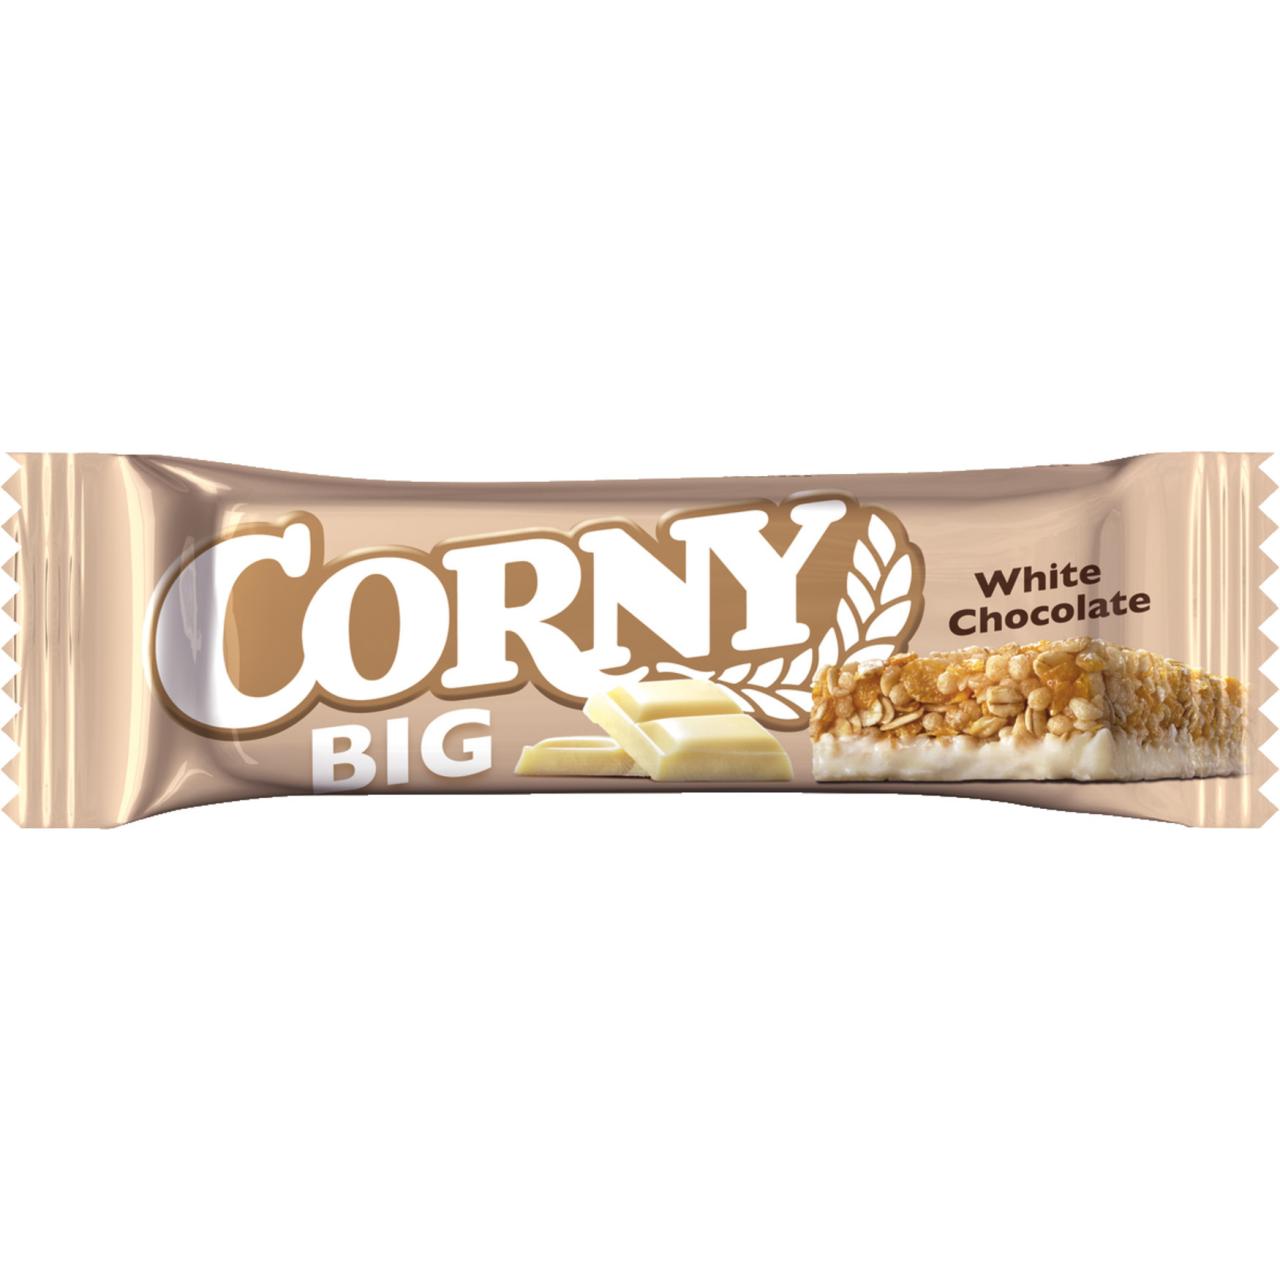 Corny Big White 40g